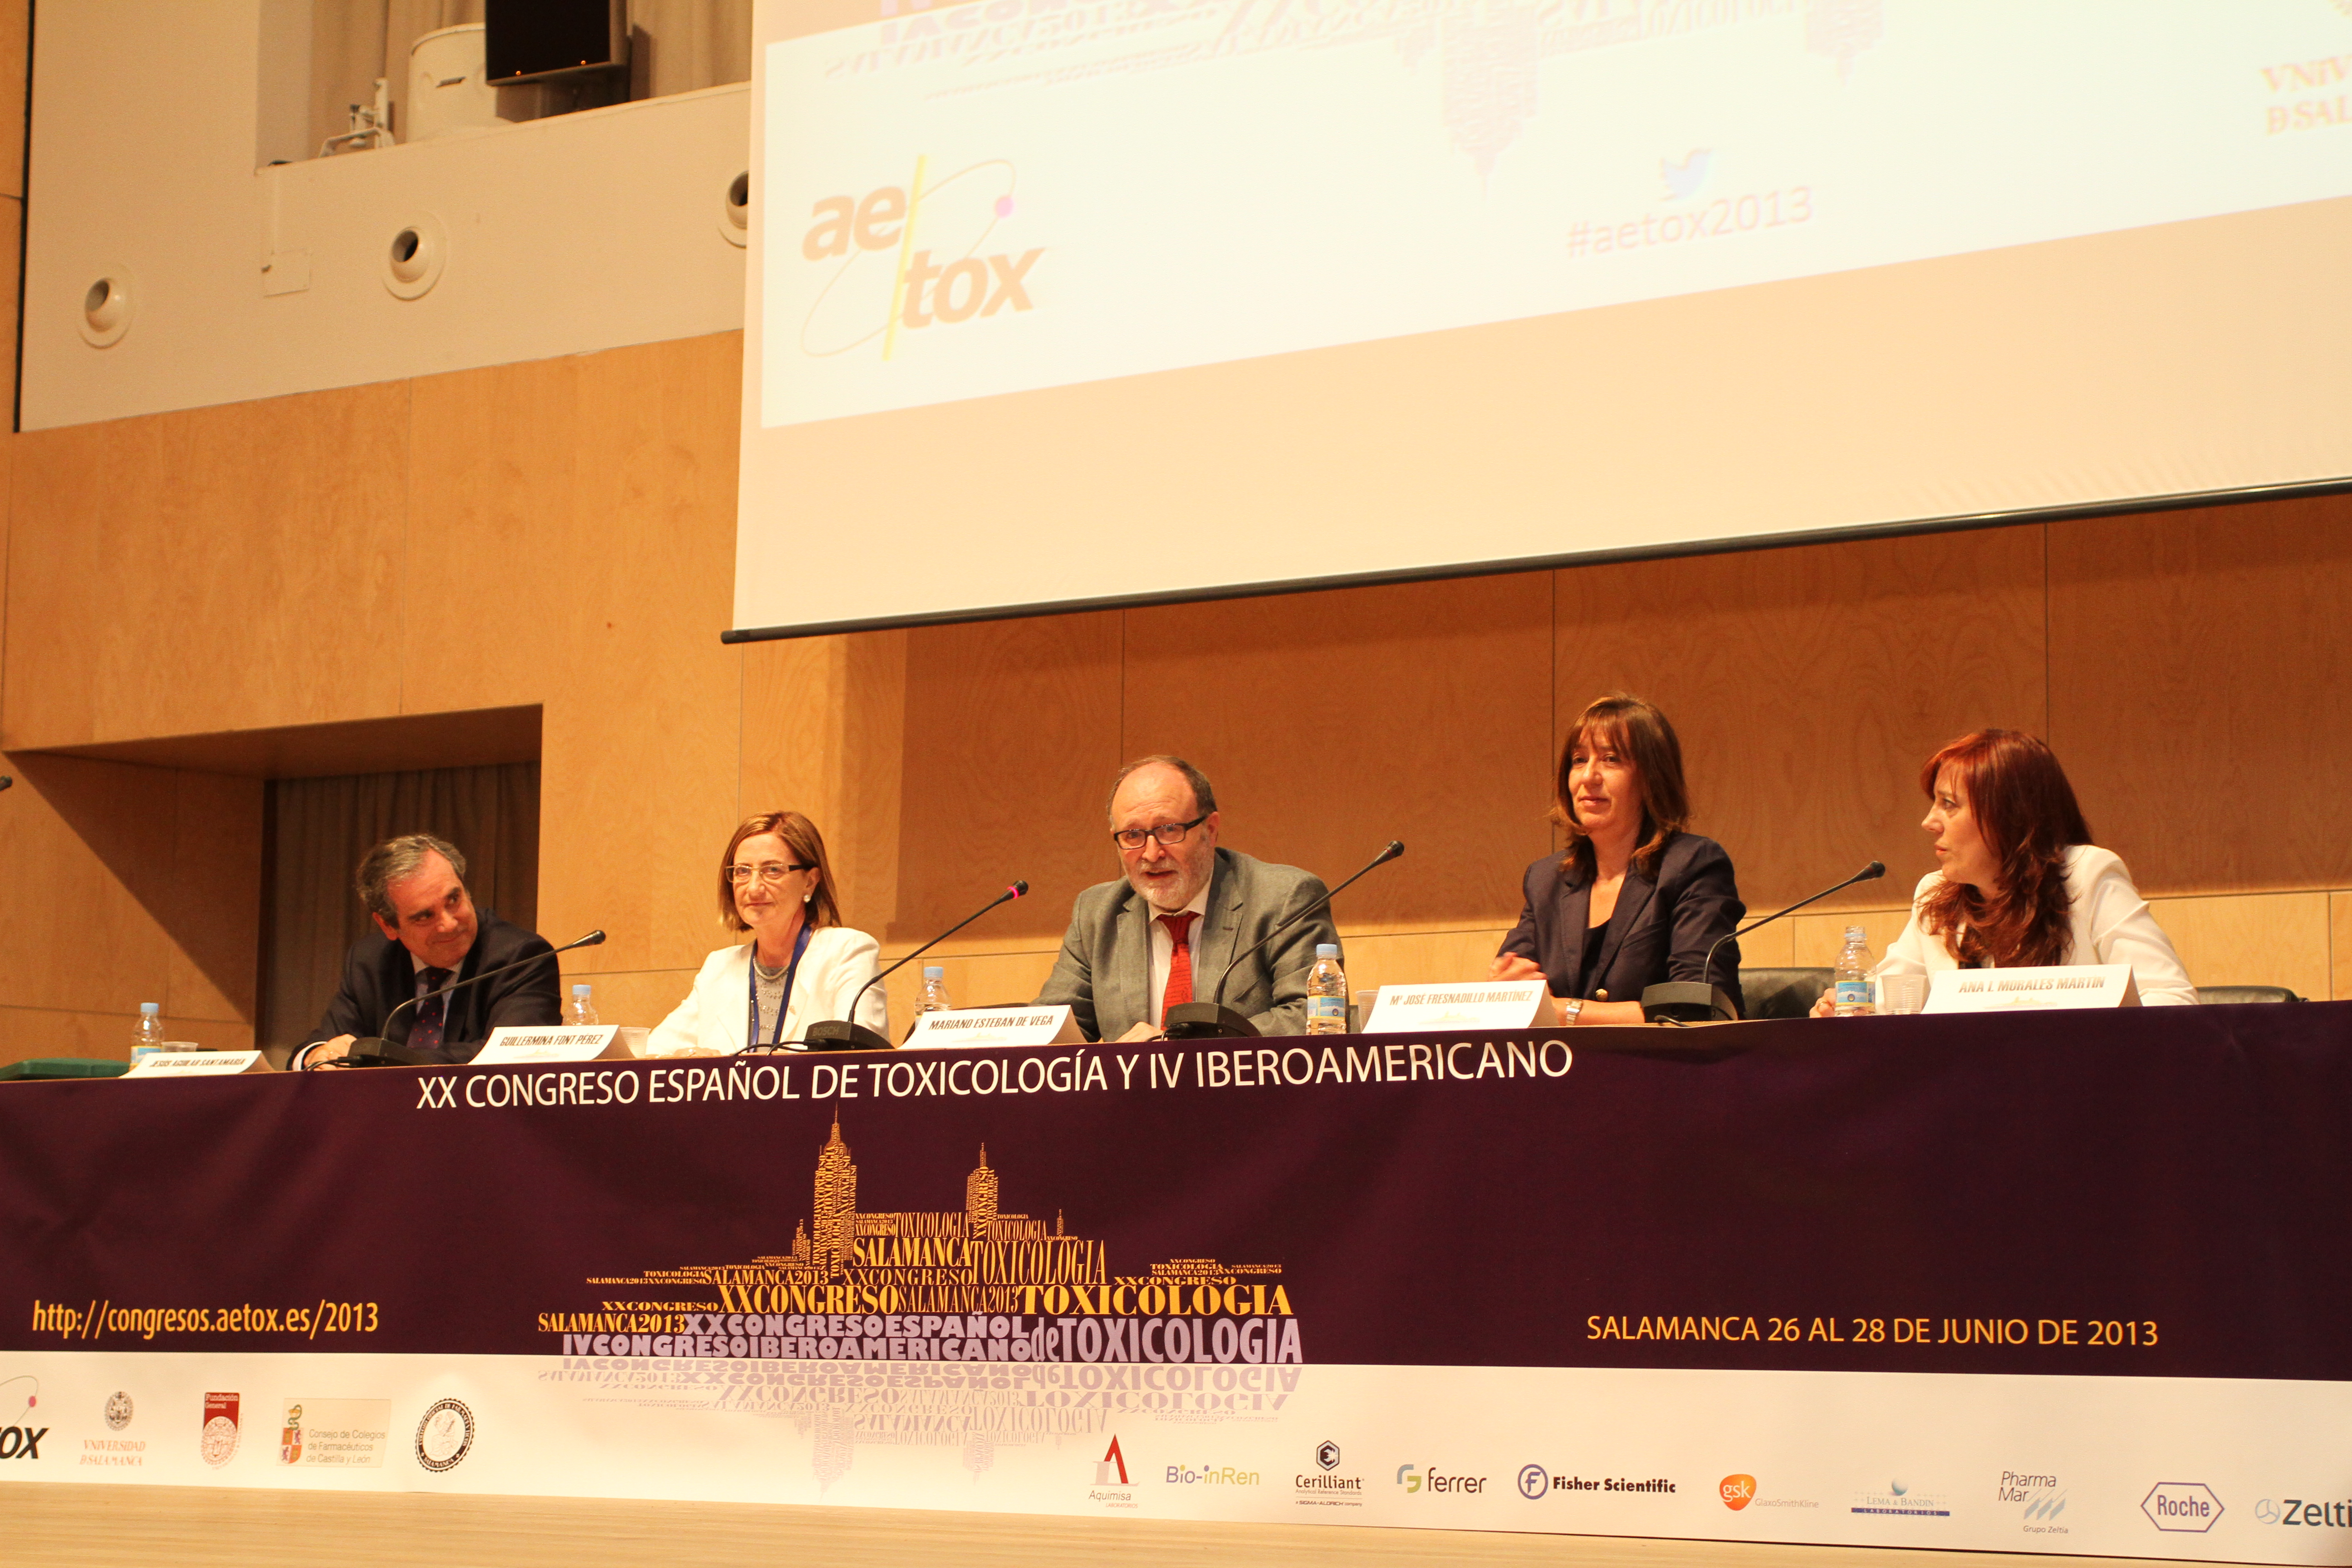 La innovación, lema central del XX Congreso Español de Toxicología que se celebra en la Universidad de Salamanca en el mes de junio